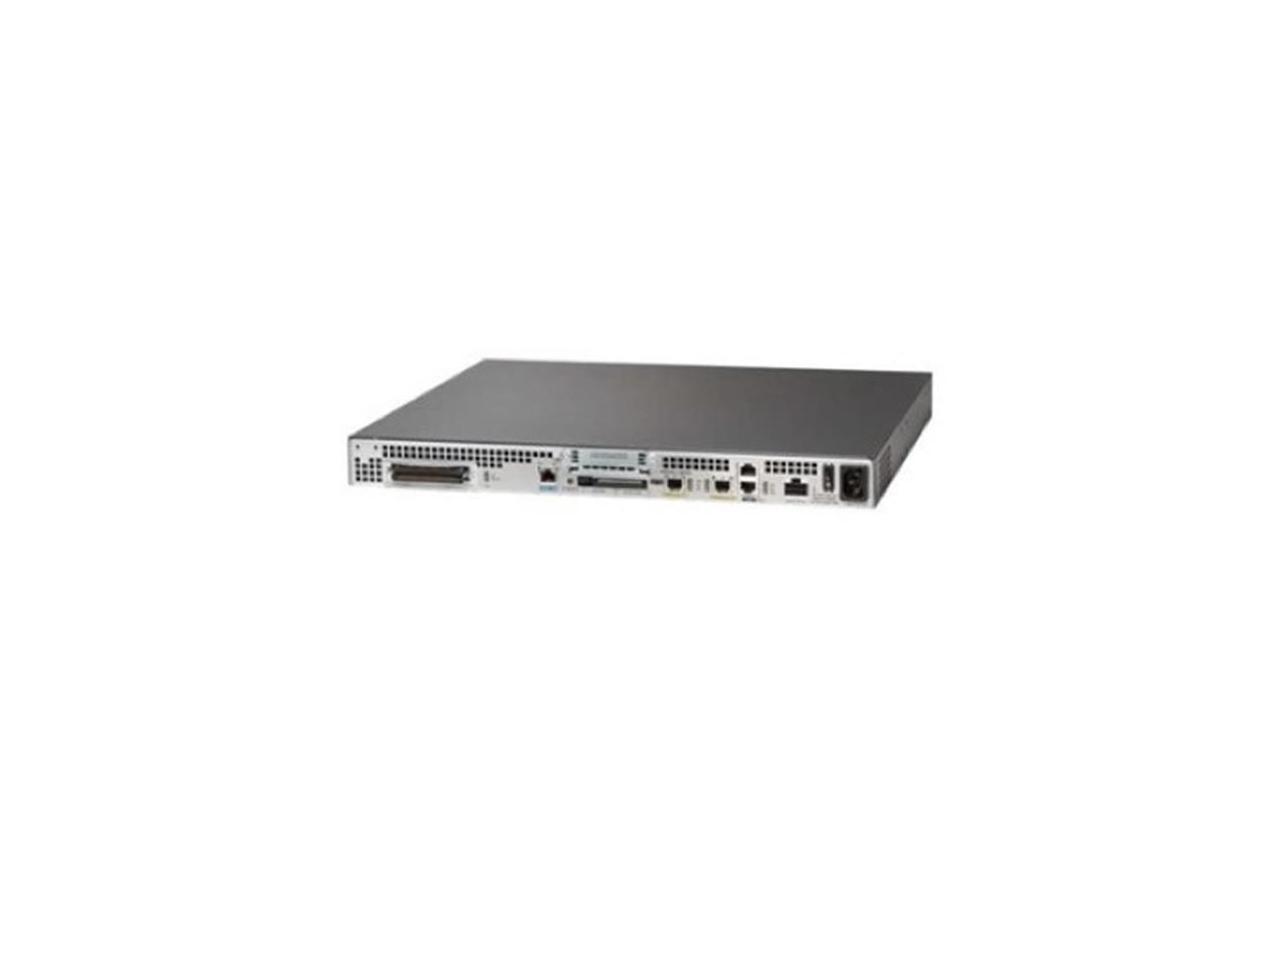 Cisco - VG320 - Cisco VG320 VoIP Gateway - 2 x RJ-45 - USB - Management Port - Gigabit Ethernet - 1 x Expansion Slots